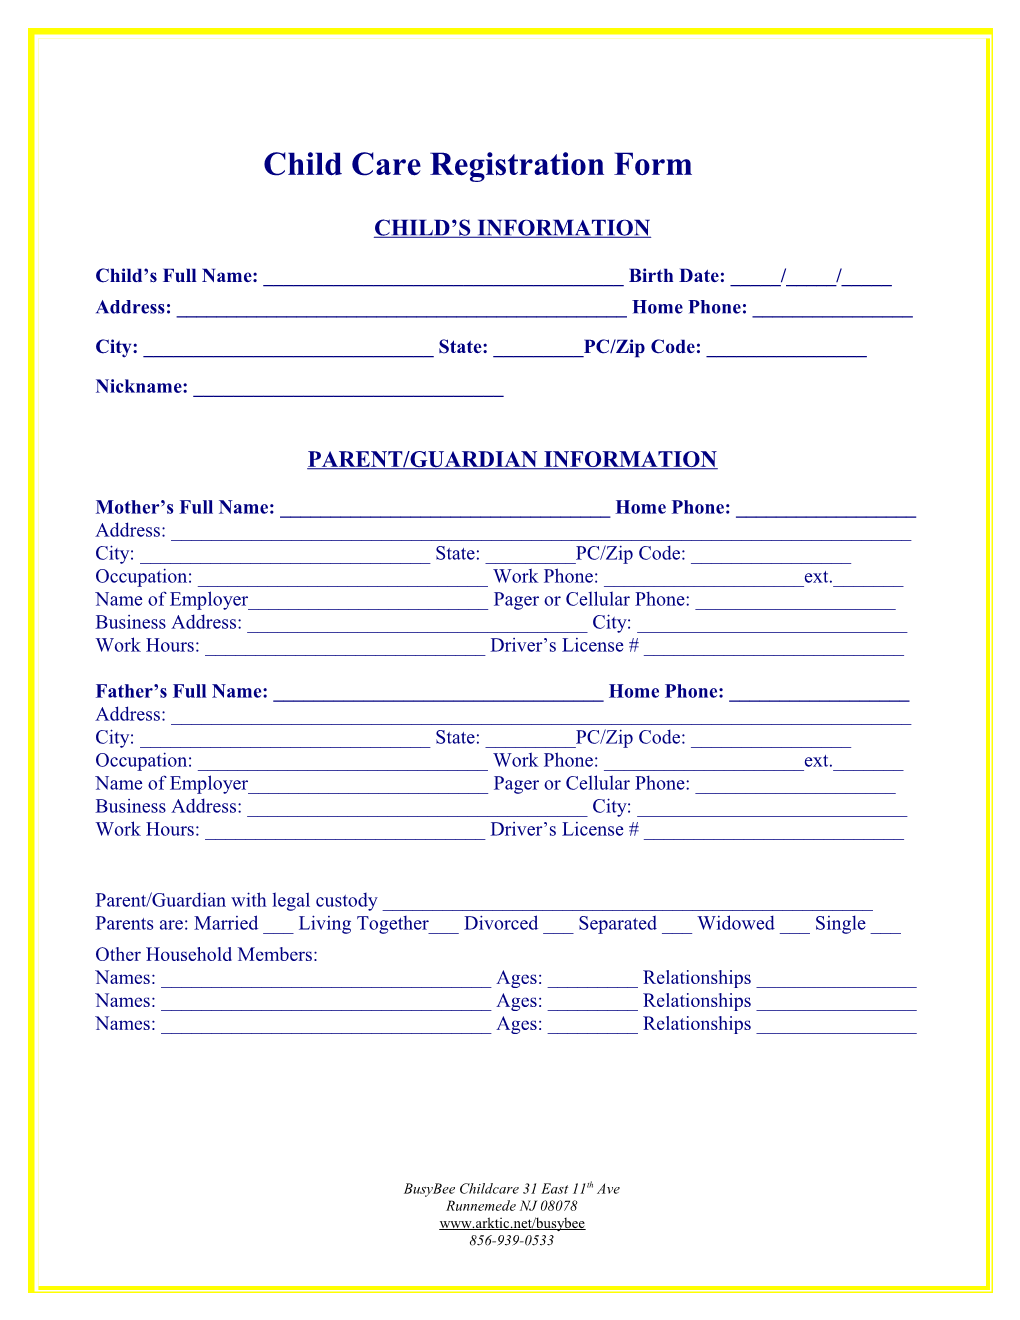 Child Care Registration Form